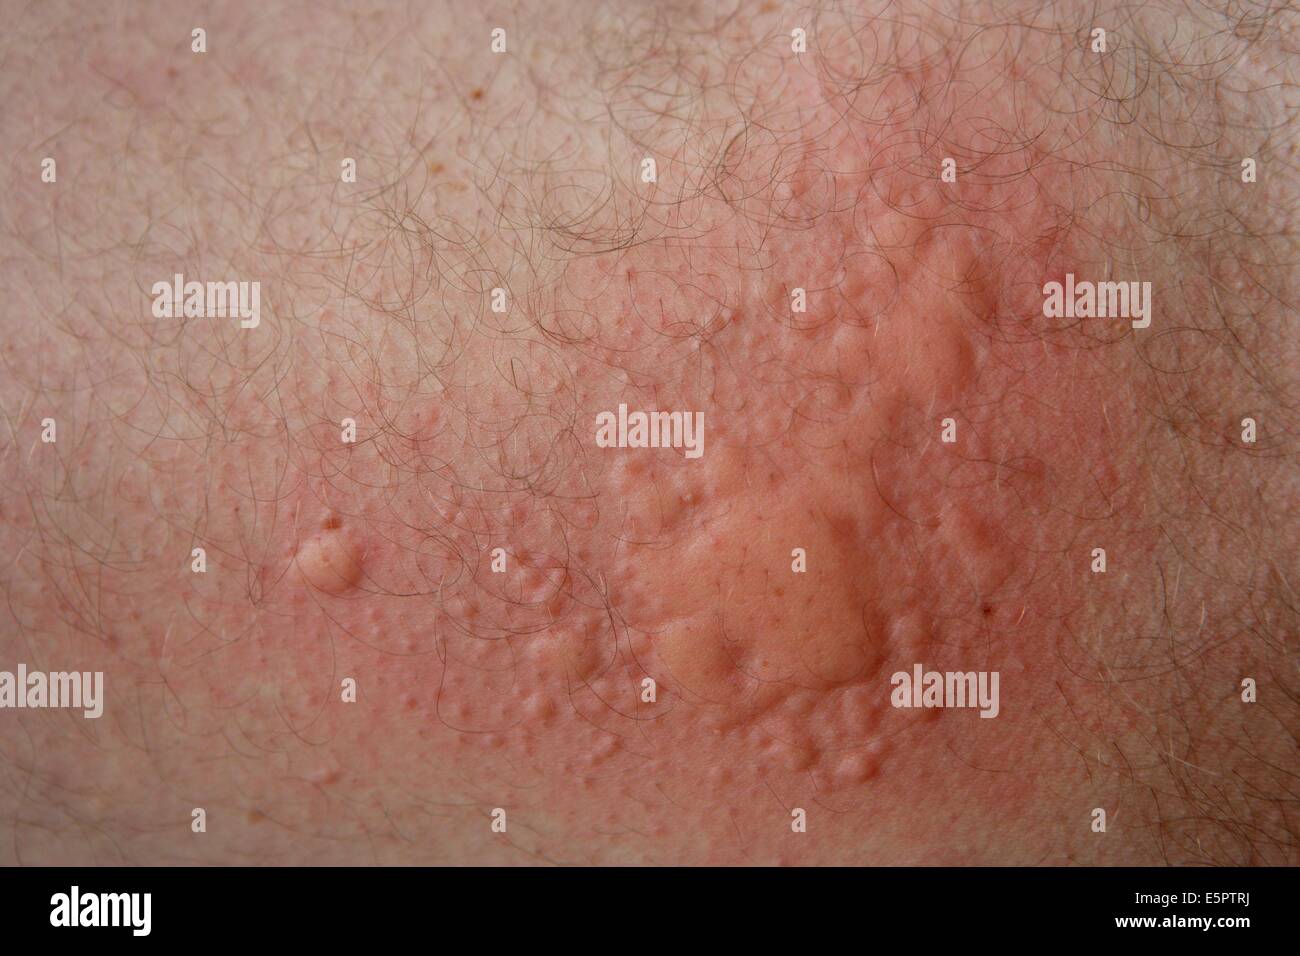 Urtikaria, Hautausschlag, auch bekannt als Nessel Hautausschlag oder Nesselsucht, verursacht durch eine Lebensmittelallergie ausgelöst durch Getreide. Stockfoto